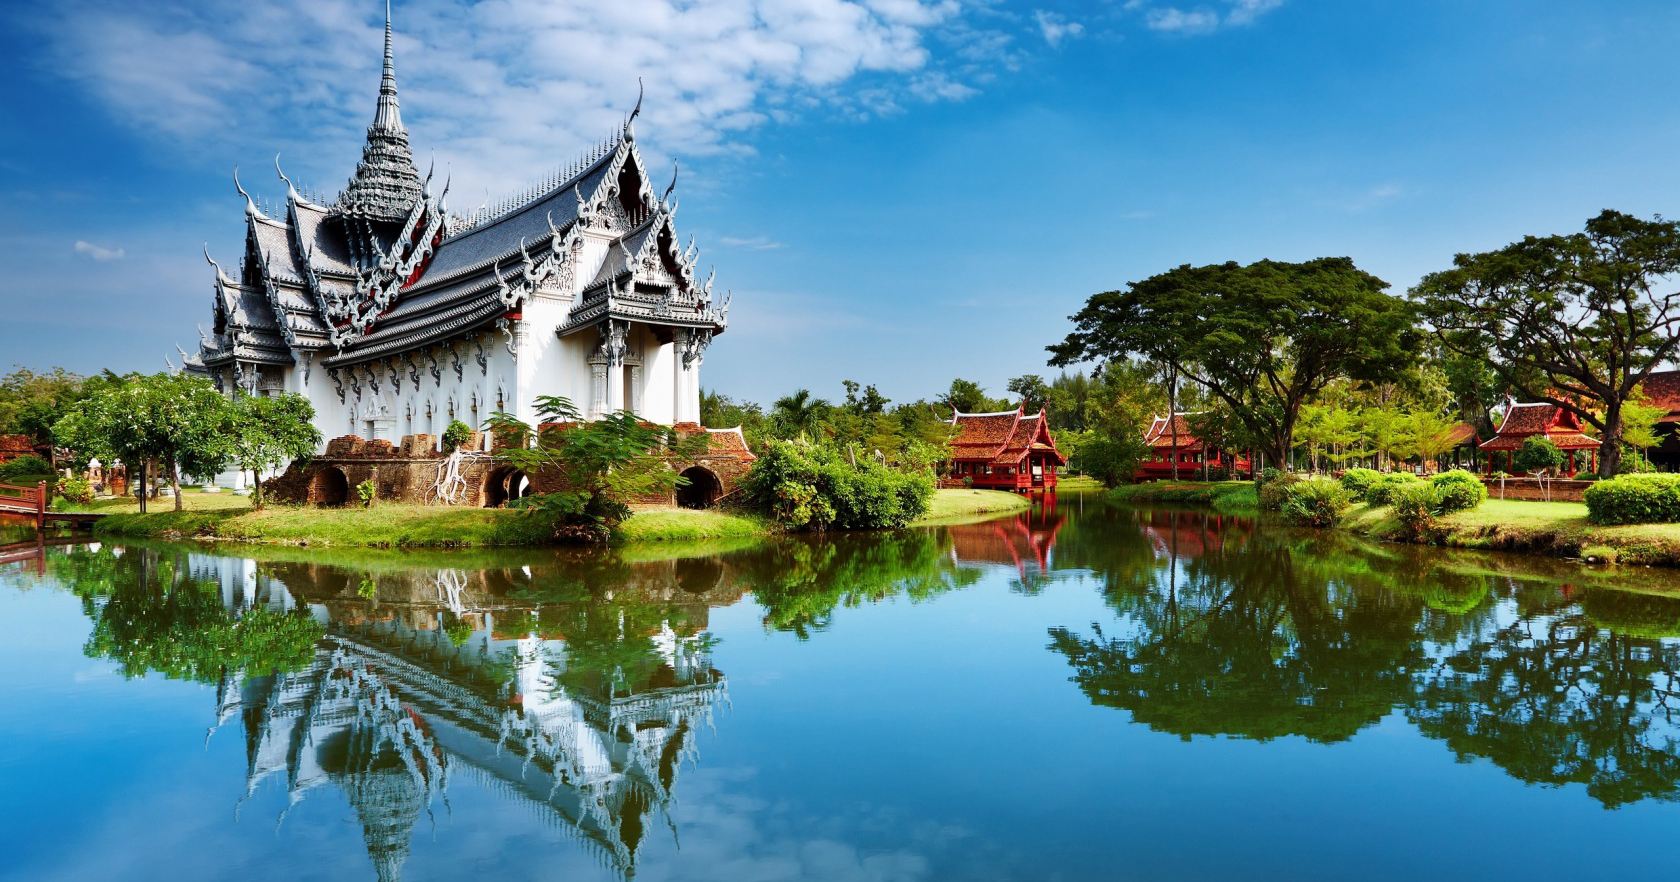 柬埔寨签证 签证visa 海外旅行社旅游咨询 柬埔寨签证